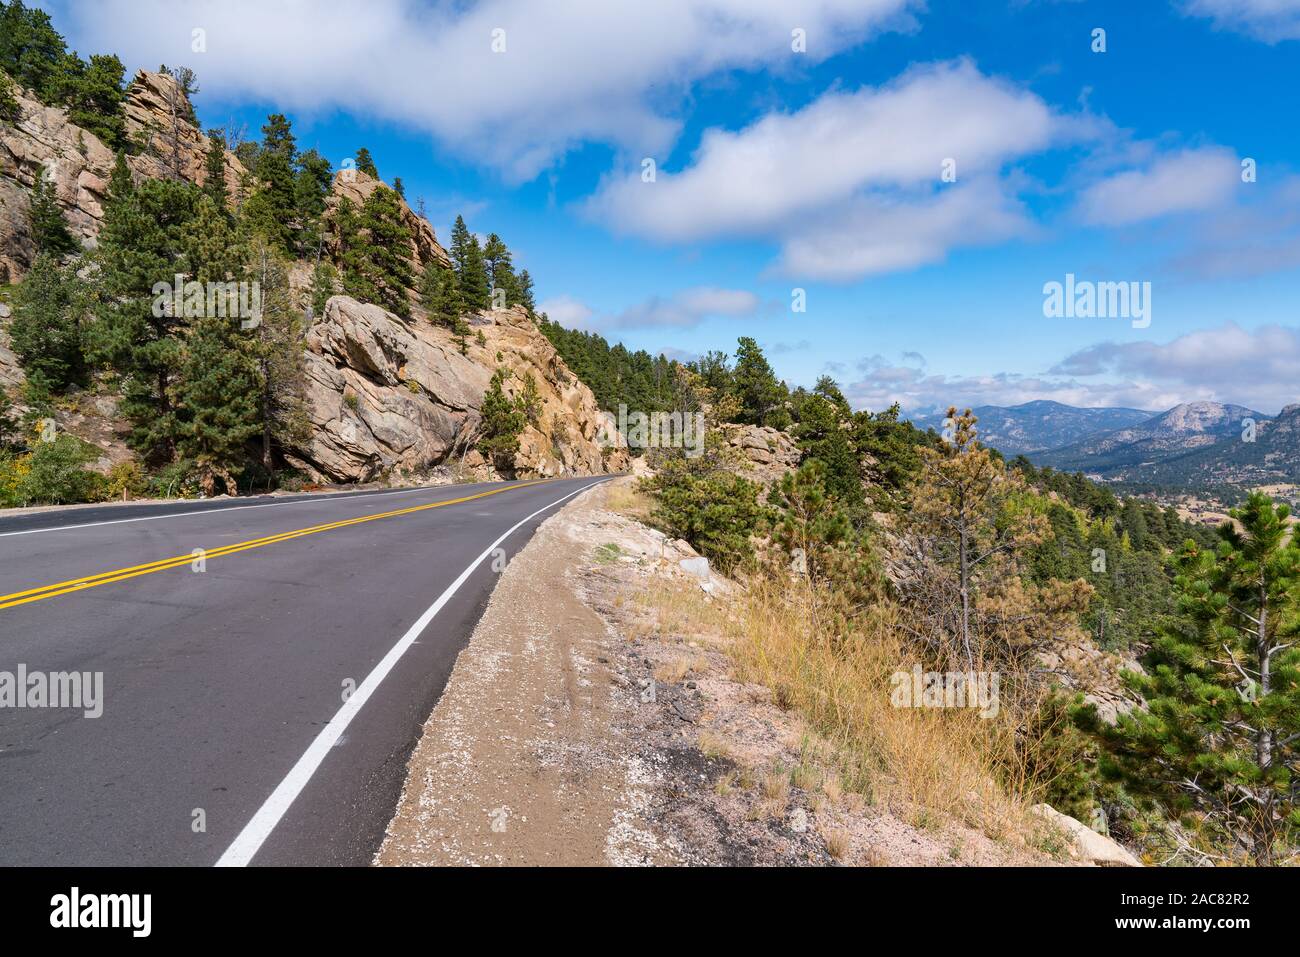 Peak to Peak Highway through the Rocky Mountains near Estes Park, Colorado Stock Photo